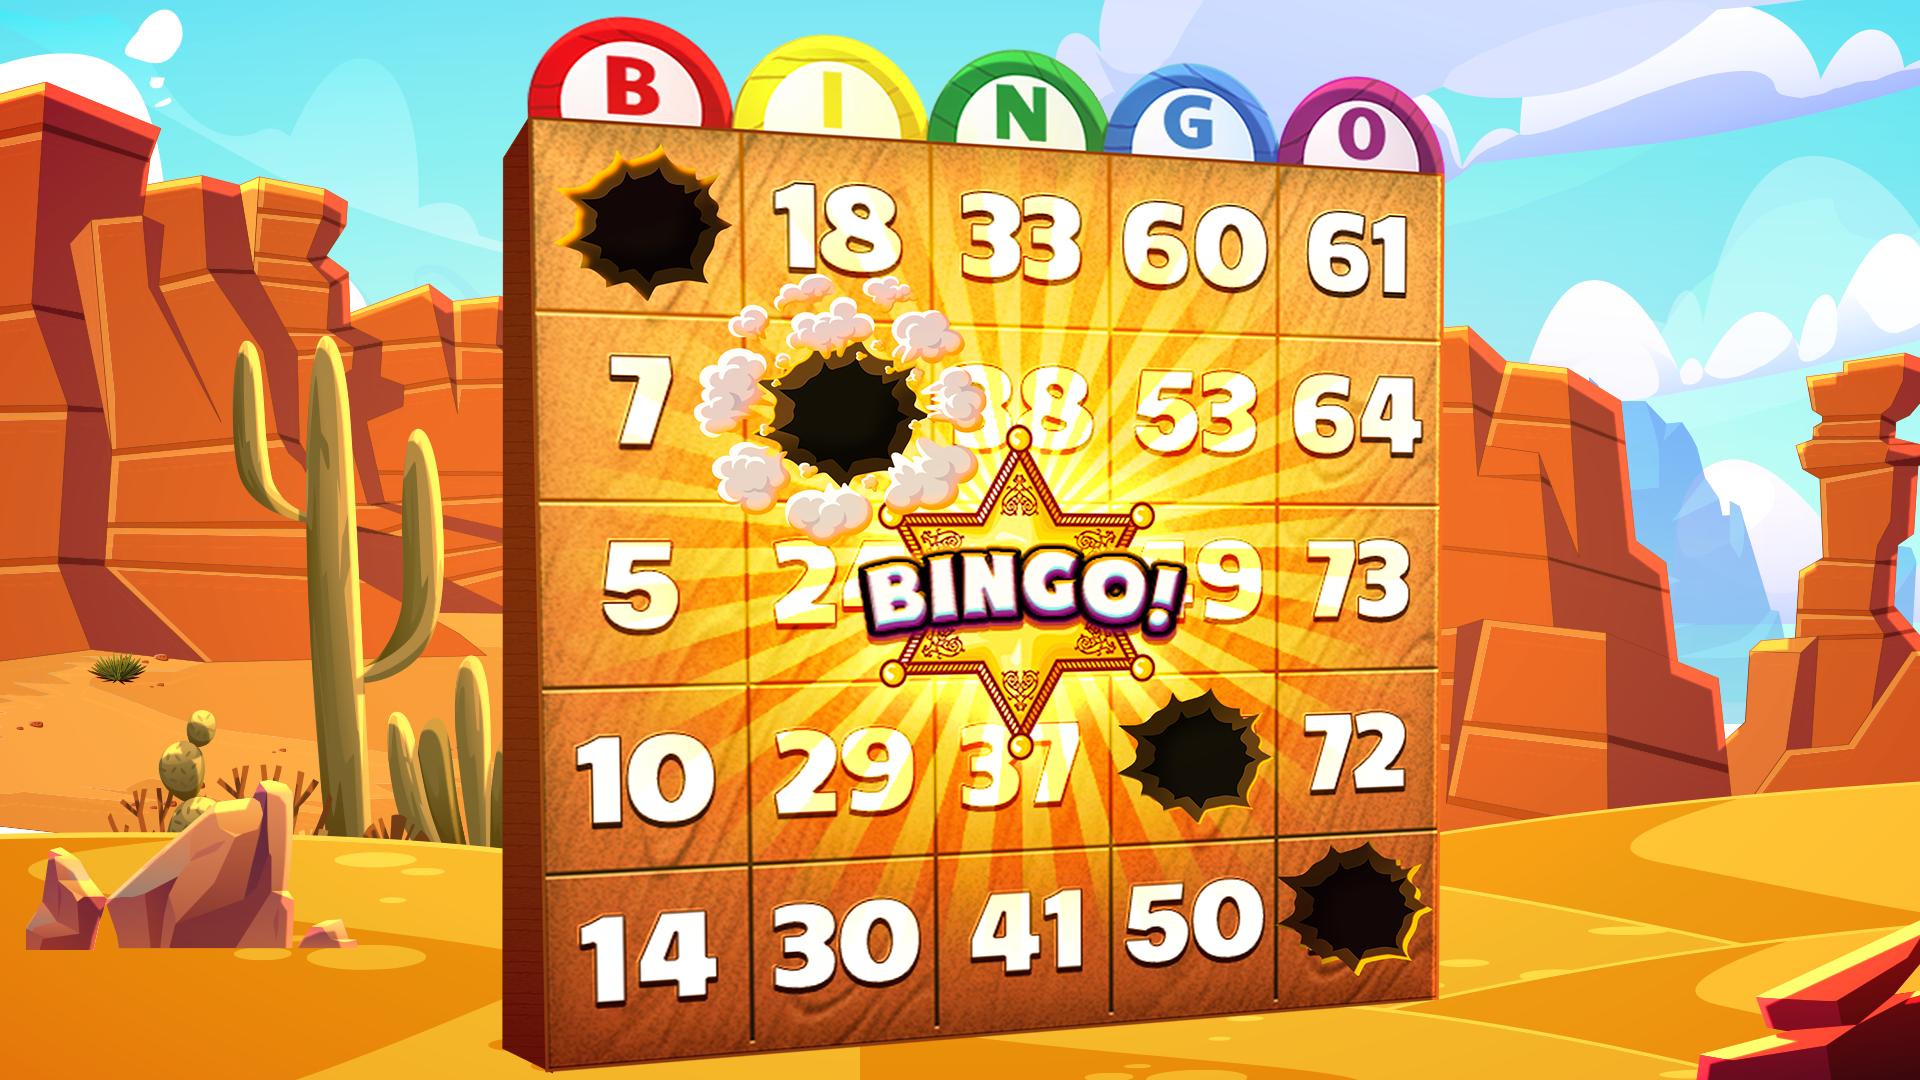 Bingo Showdown Free Bingo Games – Bingo Live Game 438.0.1 Screenshot 1